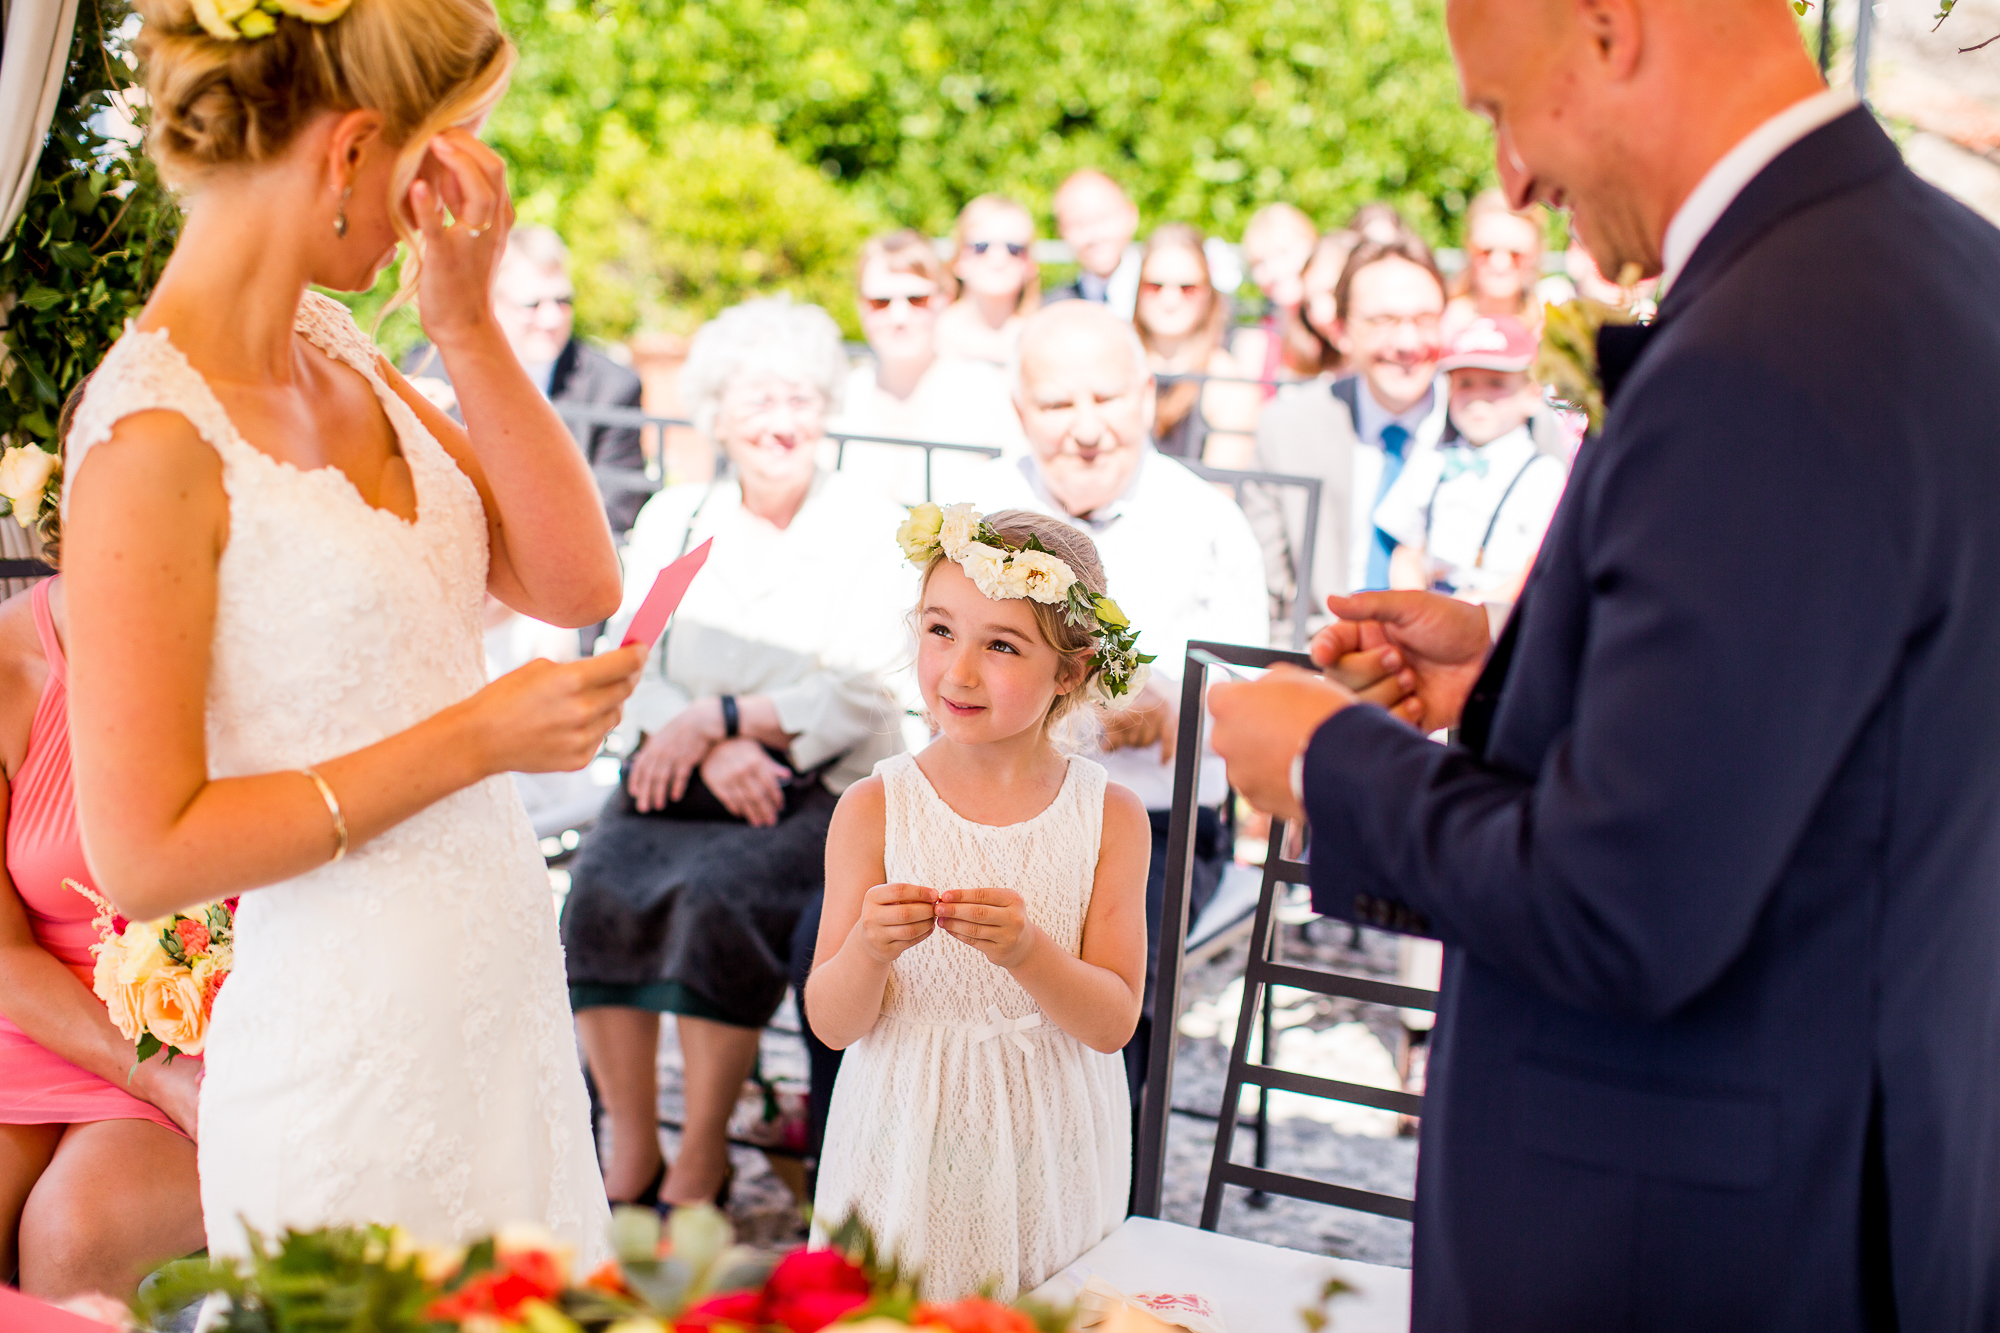 Ringtausch, Hochzeit, Blumenmädchen, Hochzeit am Gardasee, Italien, Italy, Sommerhochzeit, Seehochzeit, Pavillon, Hochzeitskleid